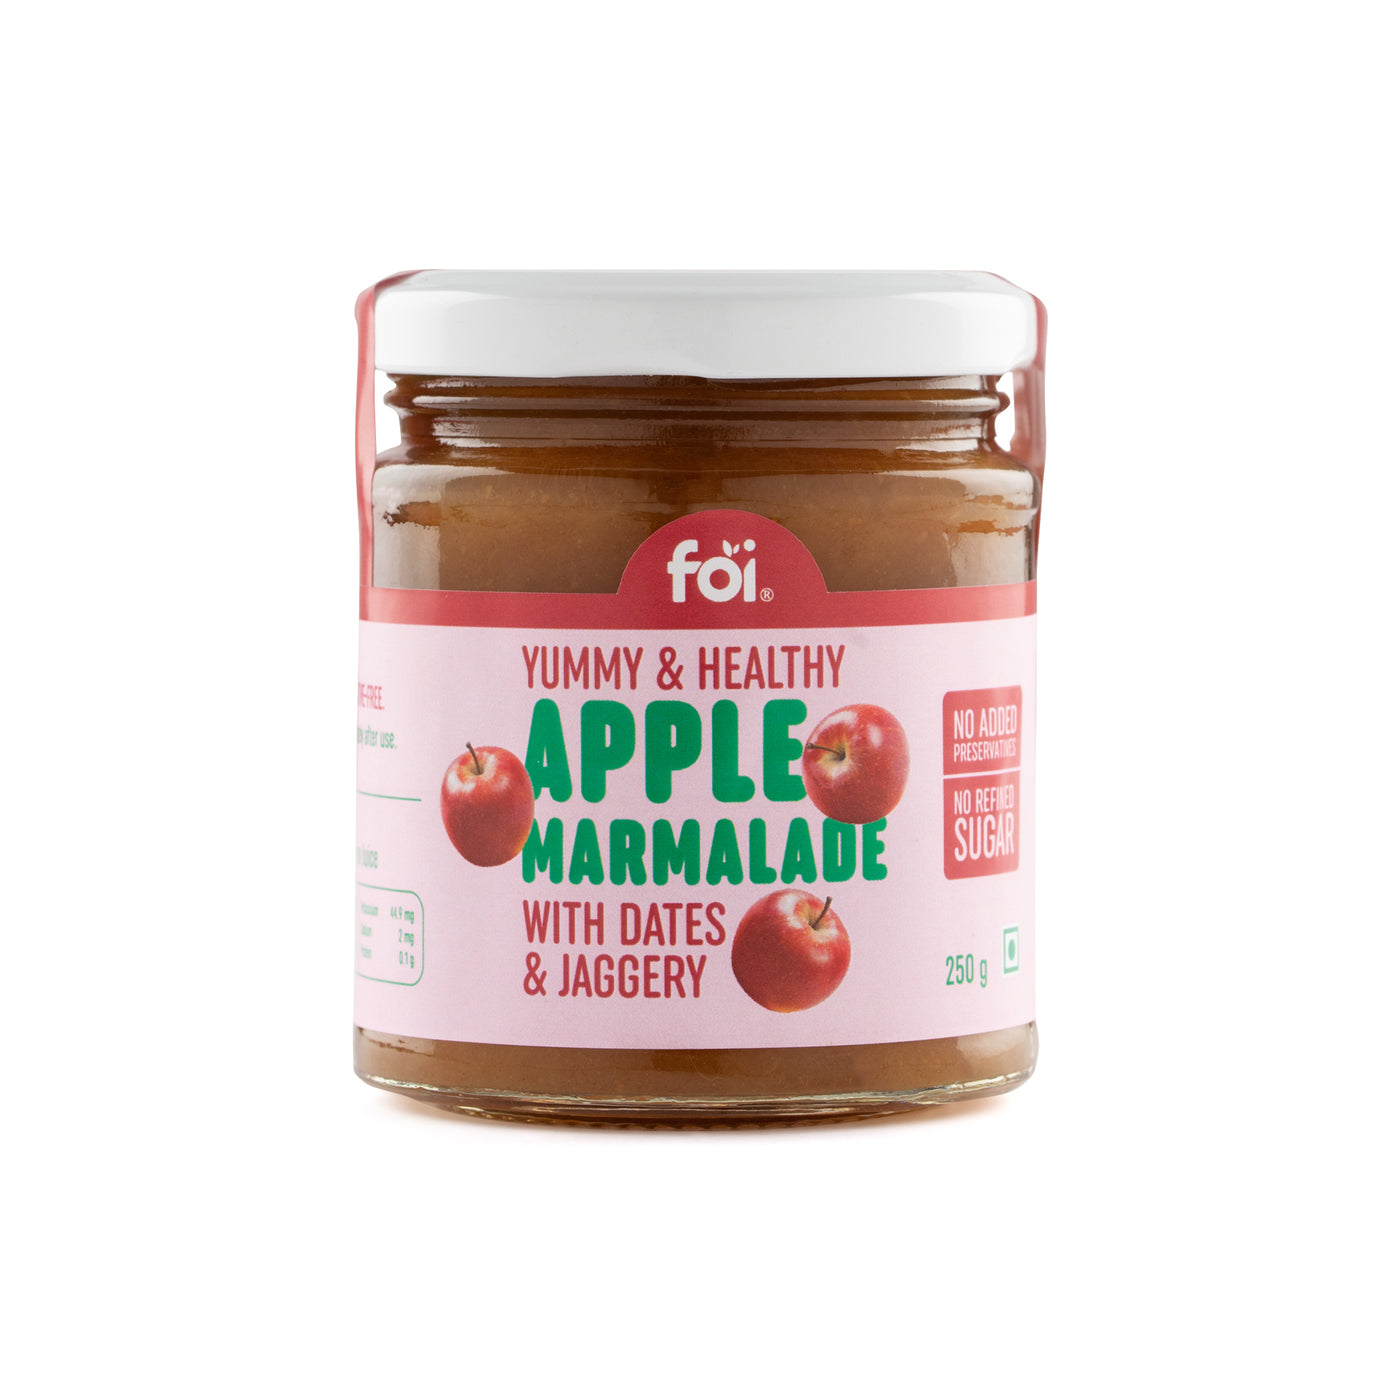 FOI Apple Marmalade